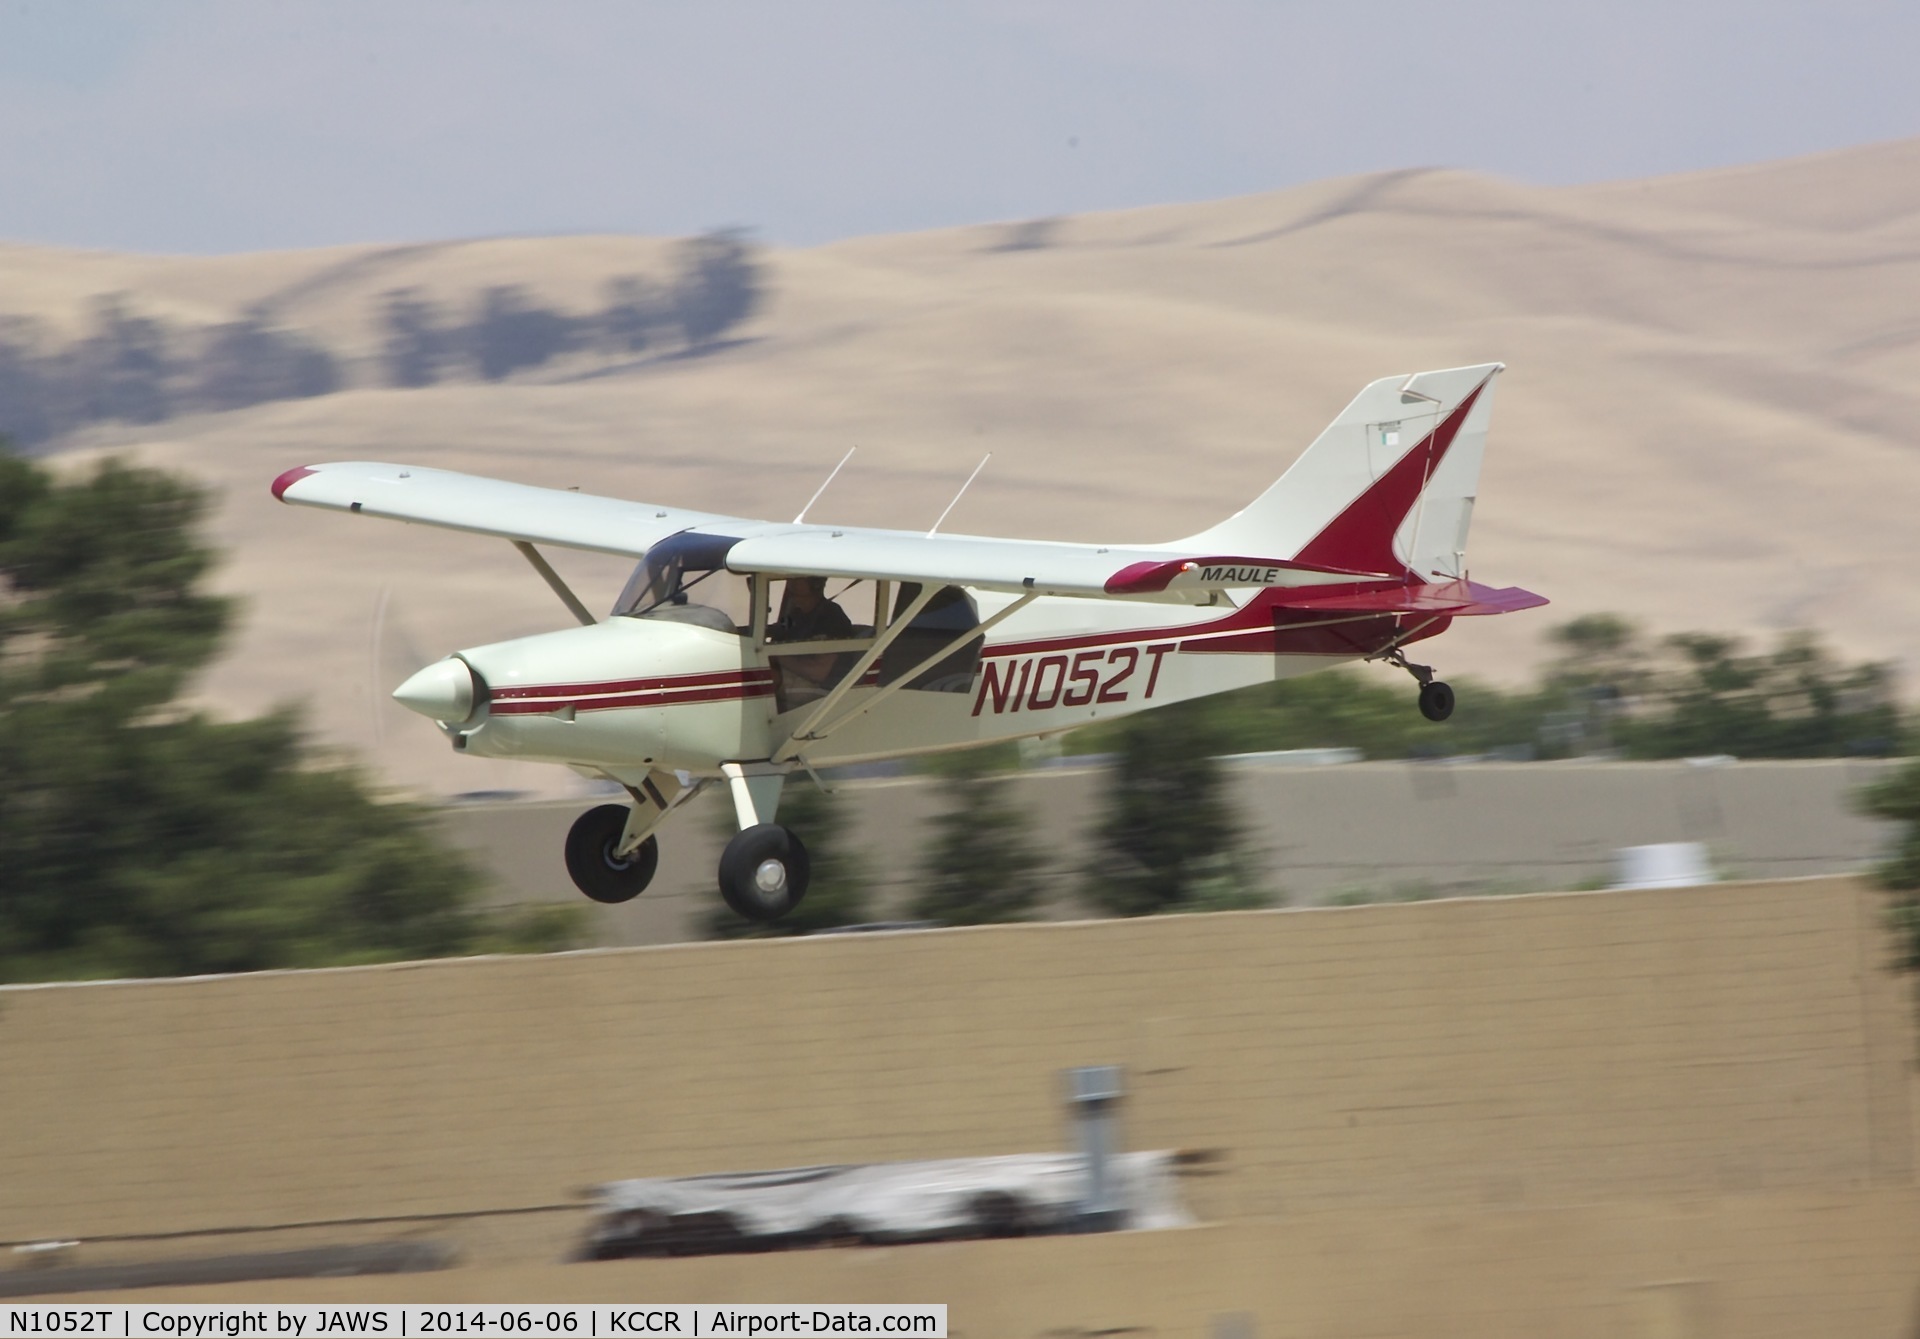 N1052T, 1998 Maule MX-7-180A Sportplane C/N 20054C, N1052T Maule MX-7-180A landing at KCCR